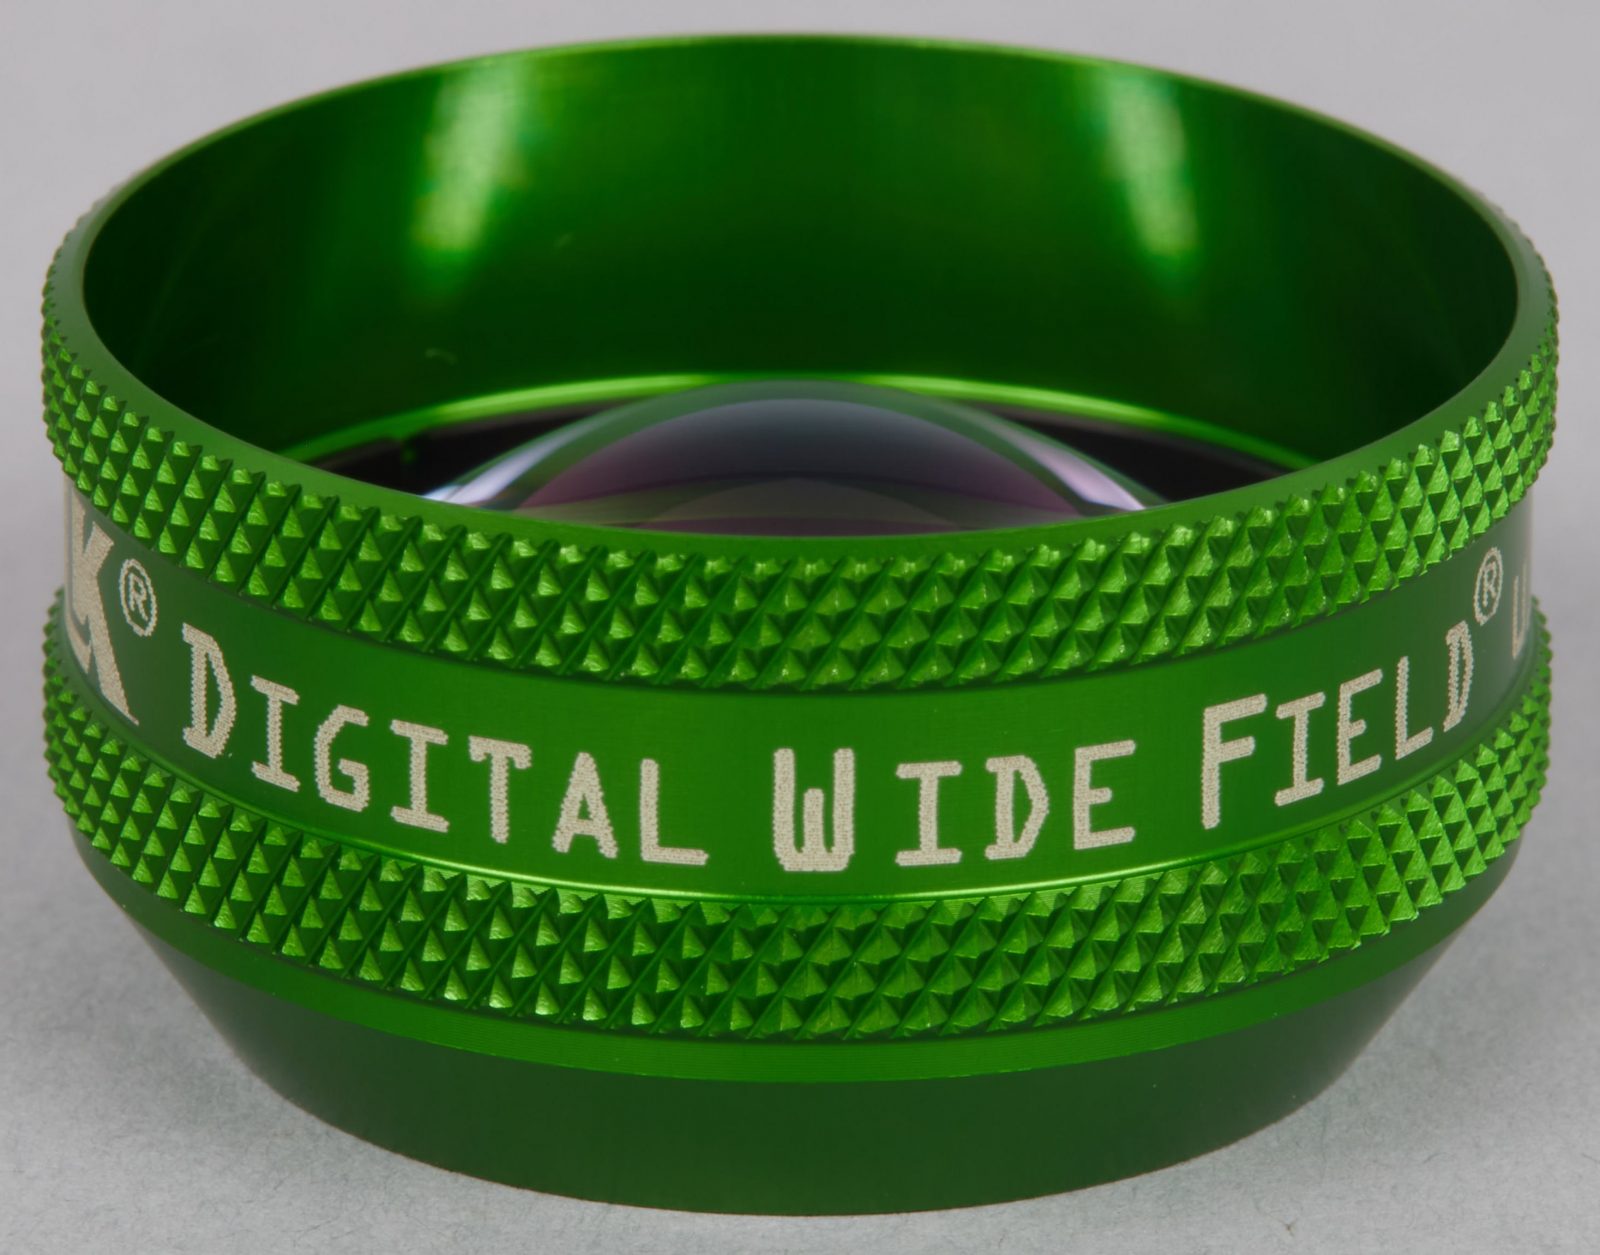 Digital Wide Field® (Green Ring)